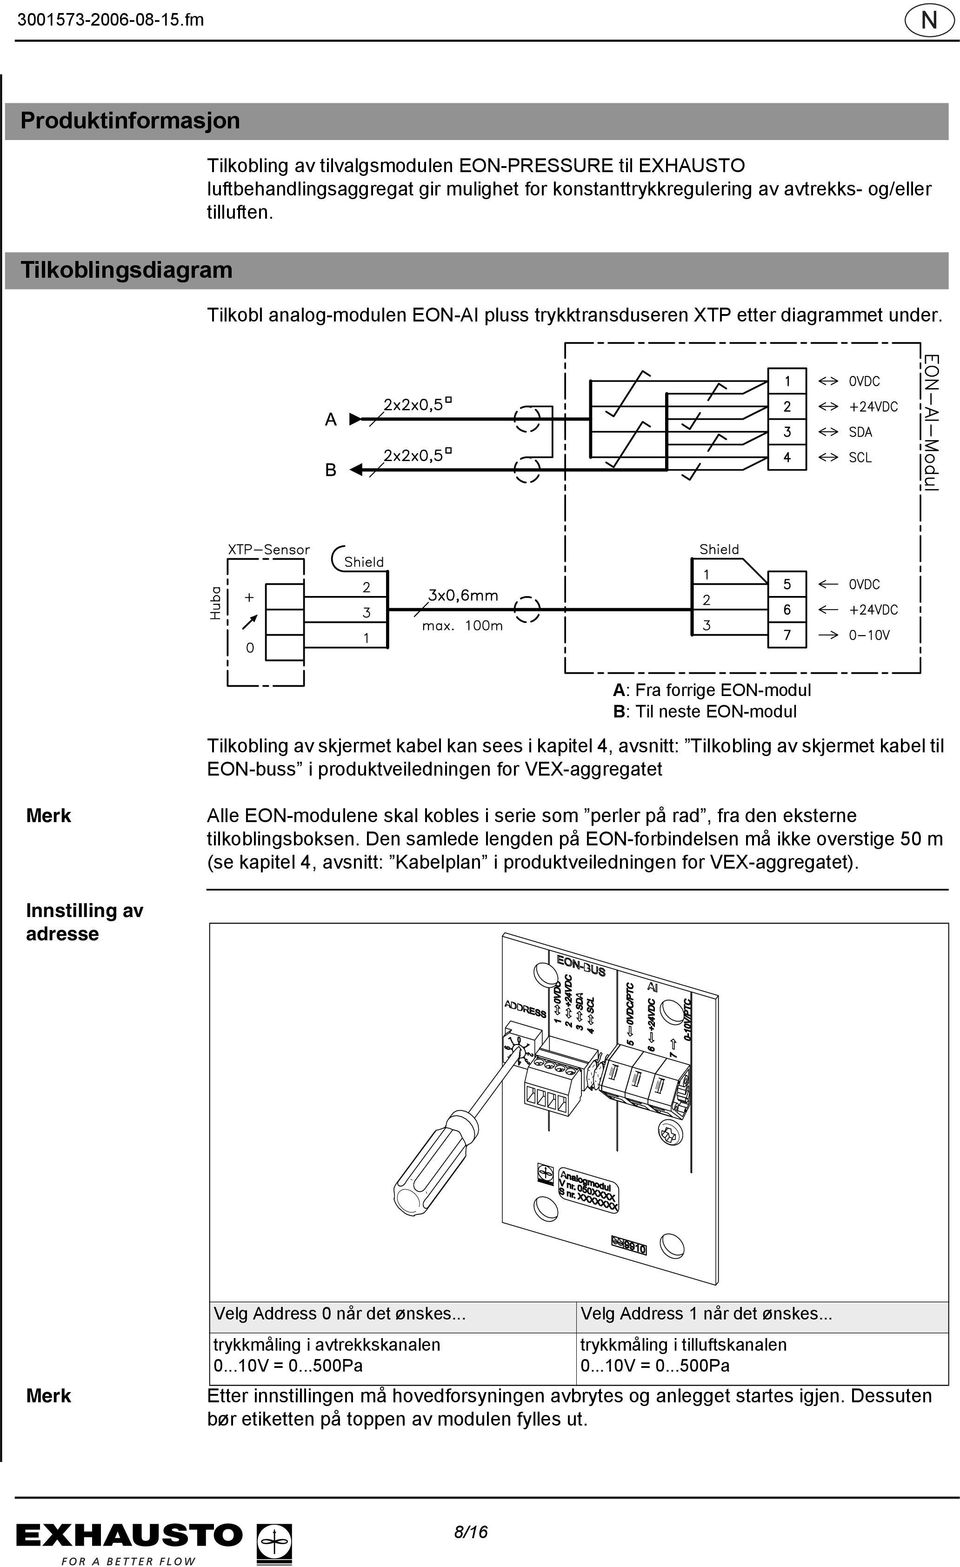 A: Fra forrige EON-modul B: Til neste EON-modul Tilkobling av skjermet kabel kan sees i kapitel 4, avsnitt: Tilkobling av skjermet kabel til EON-buss i produktveiledningen for VEX-aggregatet Merk